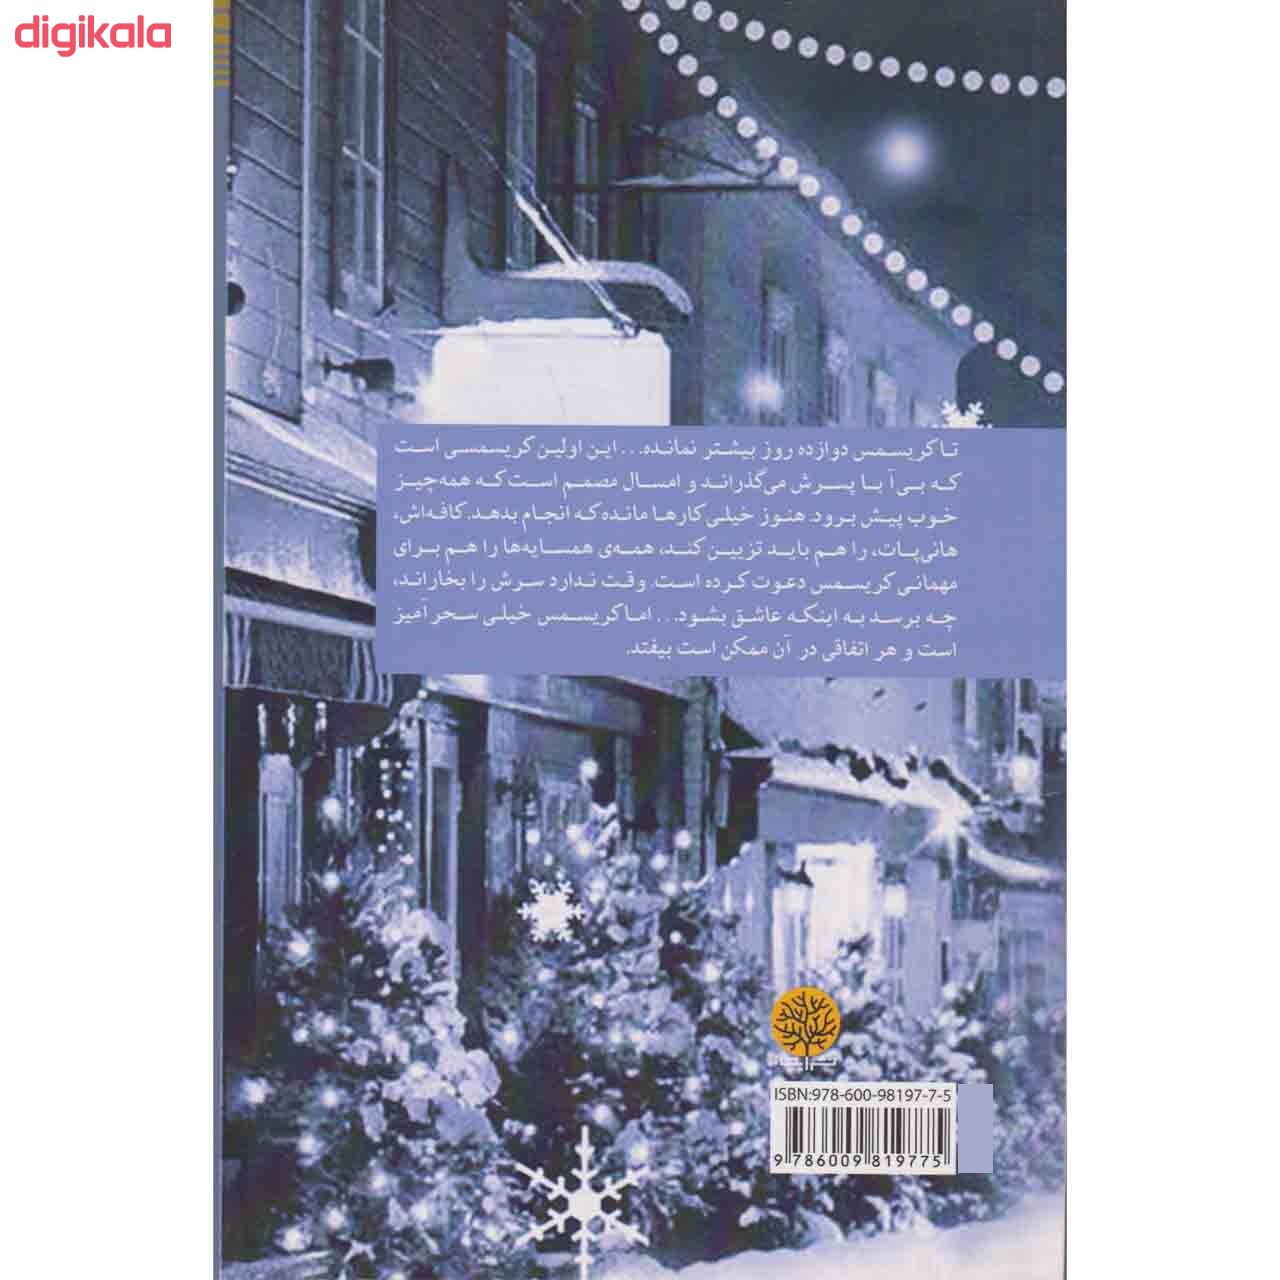  خرید اینترنتی با تخفیف ویژه کتاب تنها آرزویم برای کریسمس اثر پائولا هاوکینز نشر ایجاز